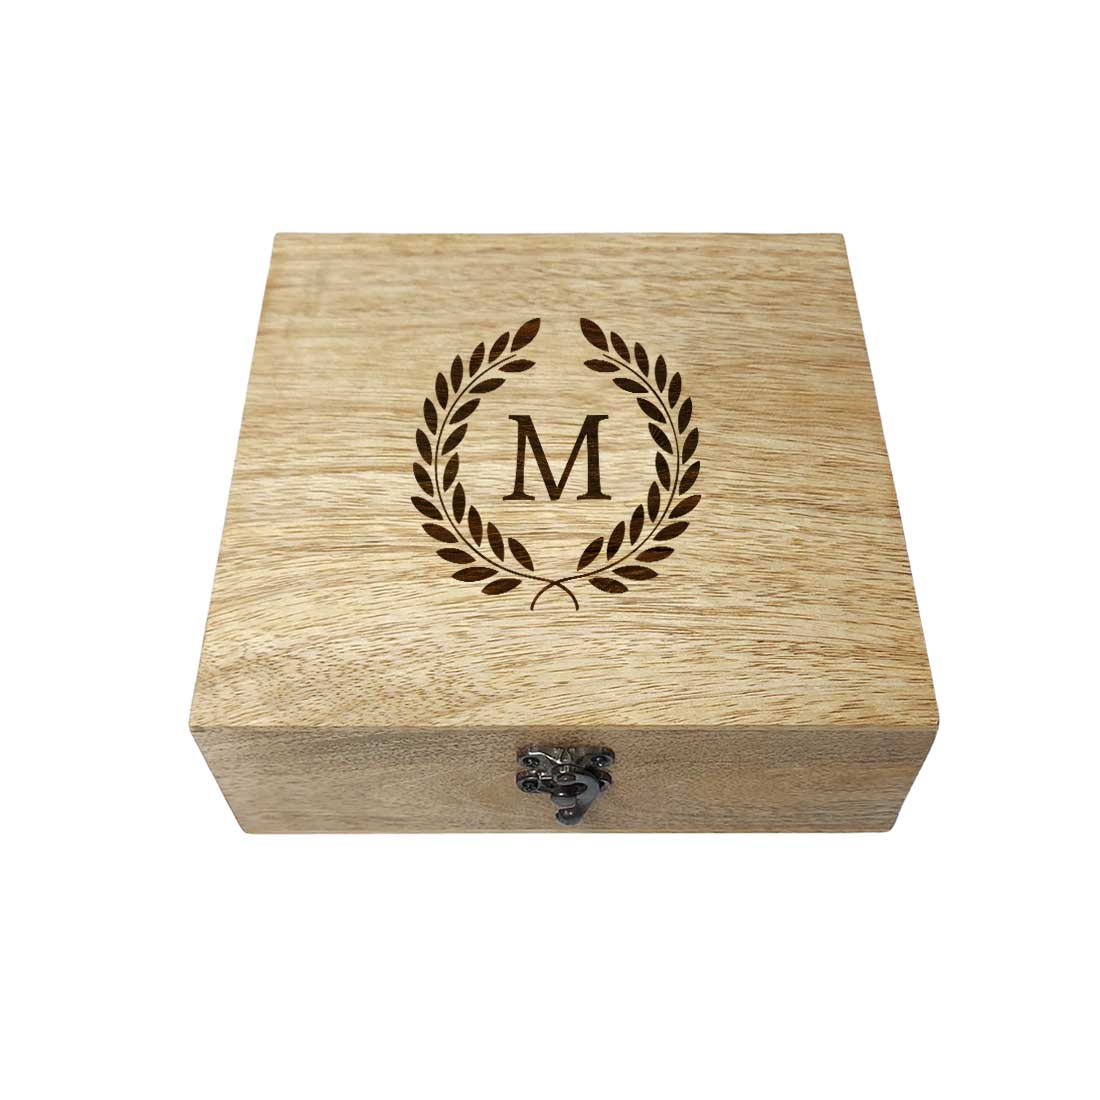 Customized Wood Bangle Box Engraved Wooden Boxes - Monogram